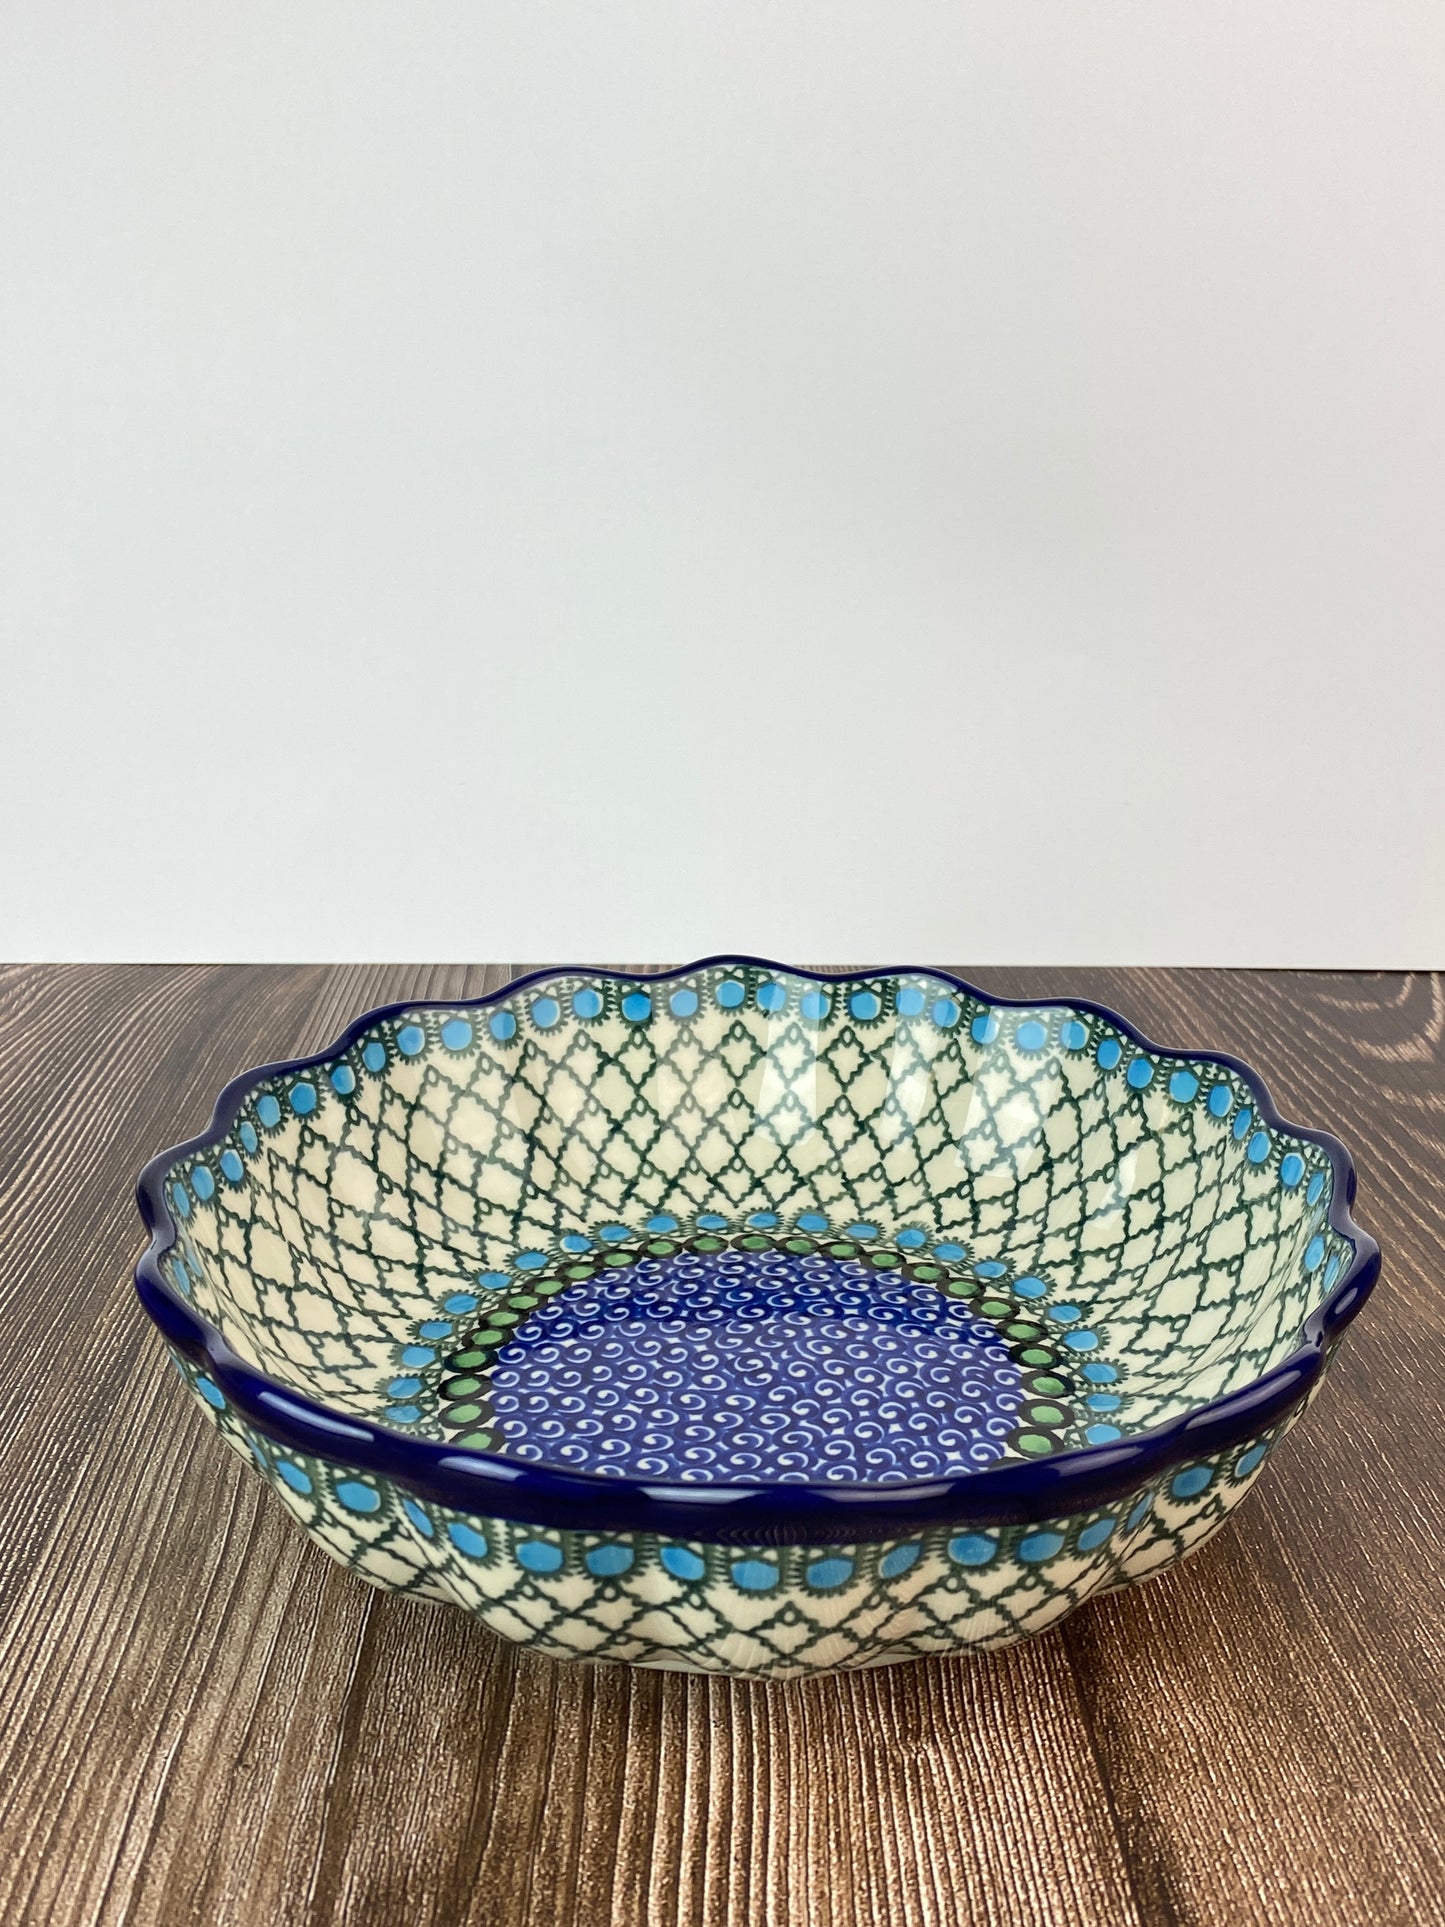 SALE Unikat Scalloped Bowl - Shape 974 - Pattern U72